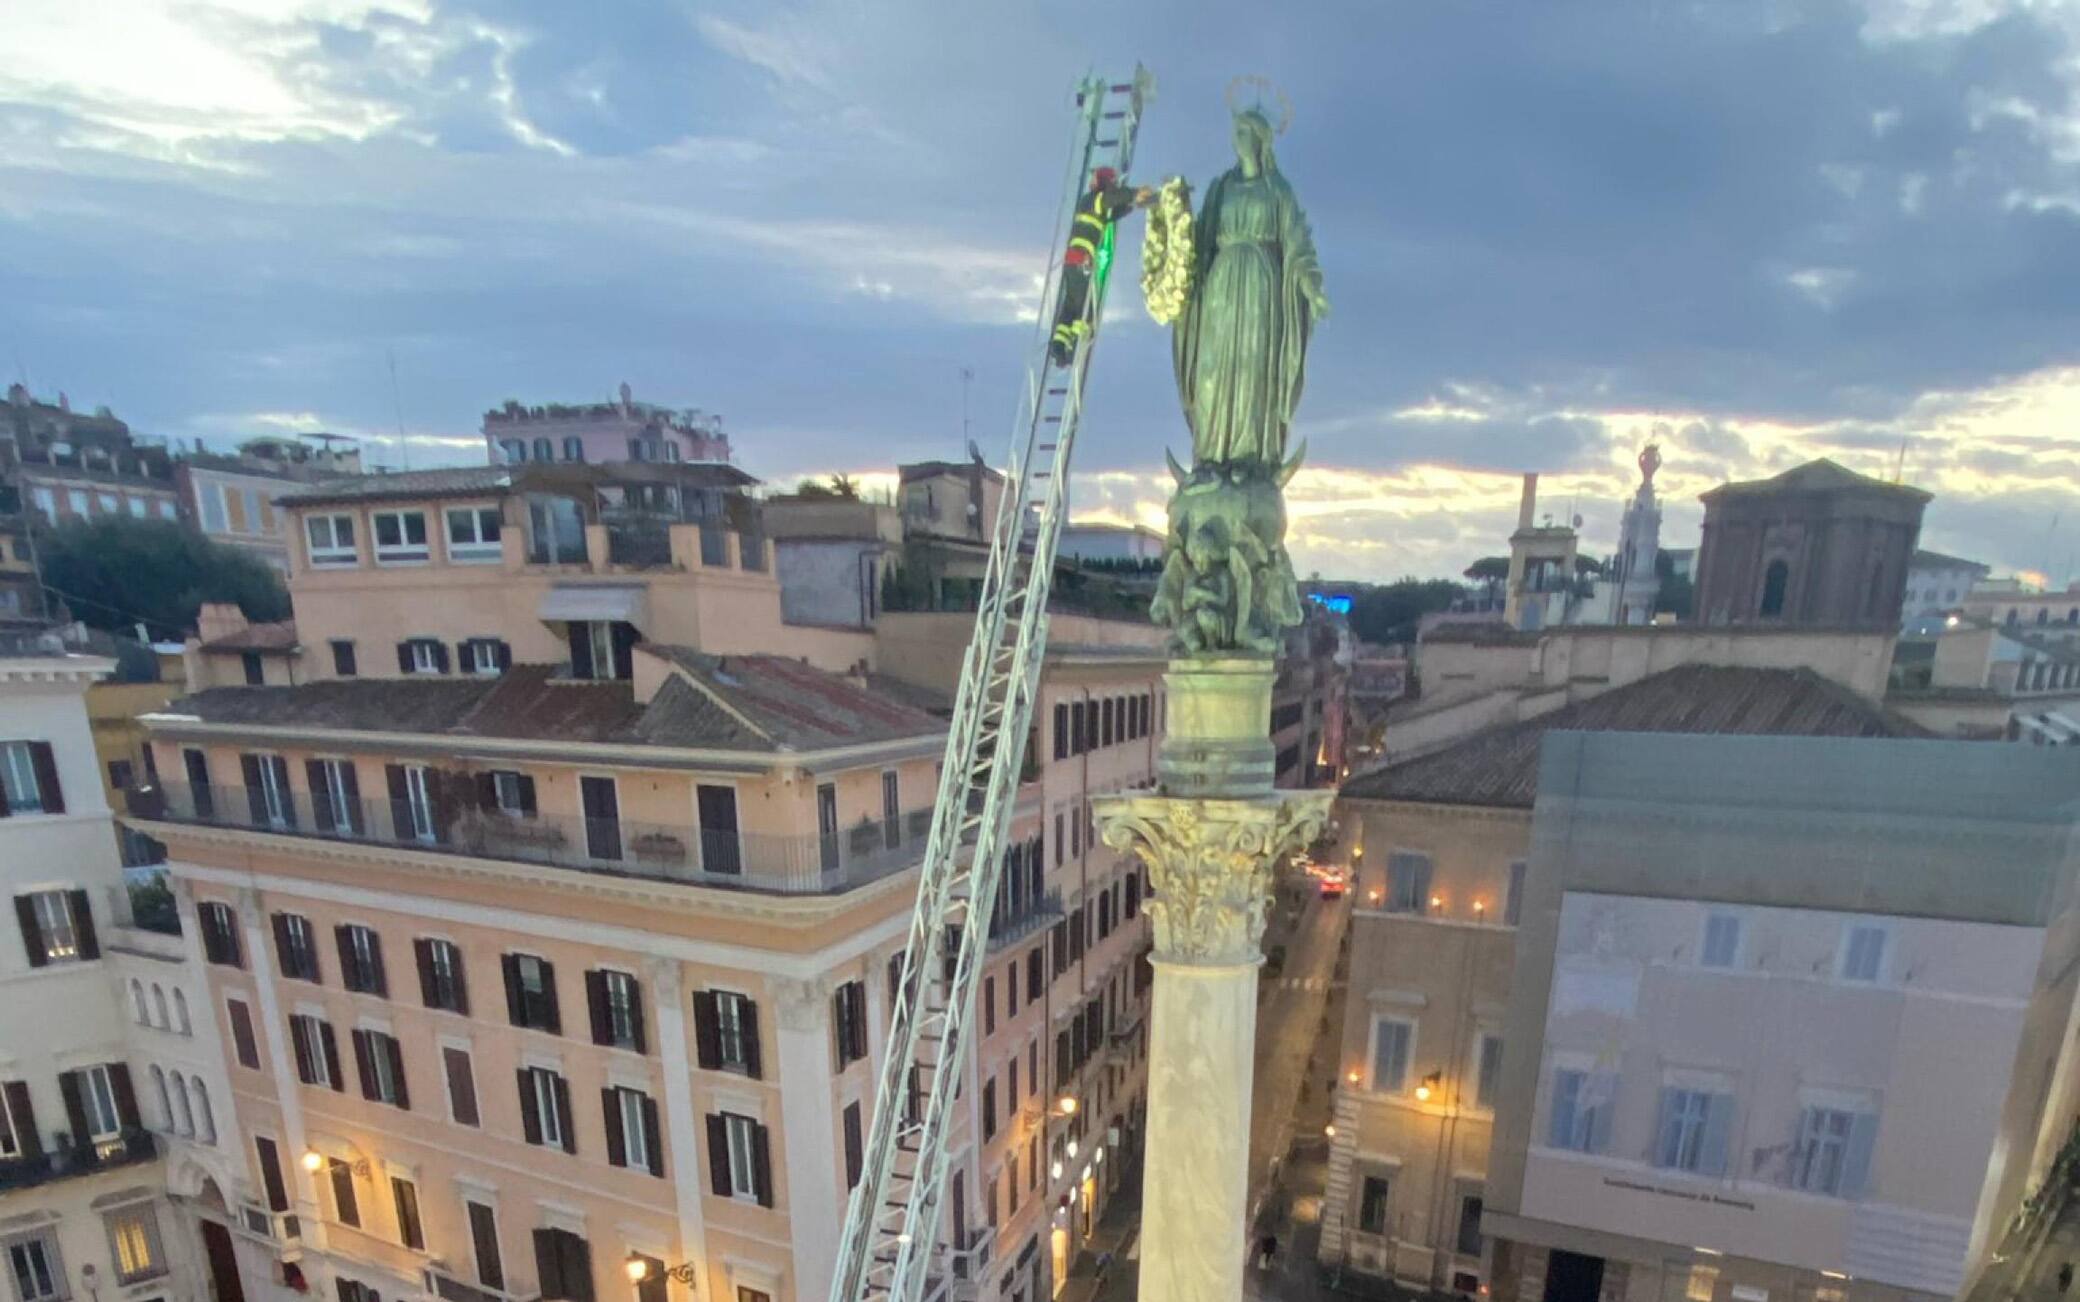 Un post tratto dal profilo Twittter dei vigili del Fuoco:@vigilidelfuocoL’omaggio floreale alla statua della Madonna in piazza di Spagna, una tradizione per i #vigilidelfuoco per celebrare l’#Immacolata. Stamattina la cerimonia a #Roma, presenti il capo Dipartimento Lega e capo del Corpo Parisi #8dicembre+++ATTENZIONE LA FOTO NON PUO' ESSERE PUBBLICATA O RIPRODOTTA SENZA L'AUTORIZZAZIONE DELLA FONTE DI ORIGINE CUI SI RINVIA+++